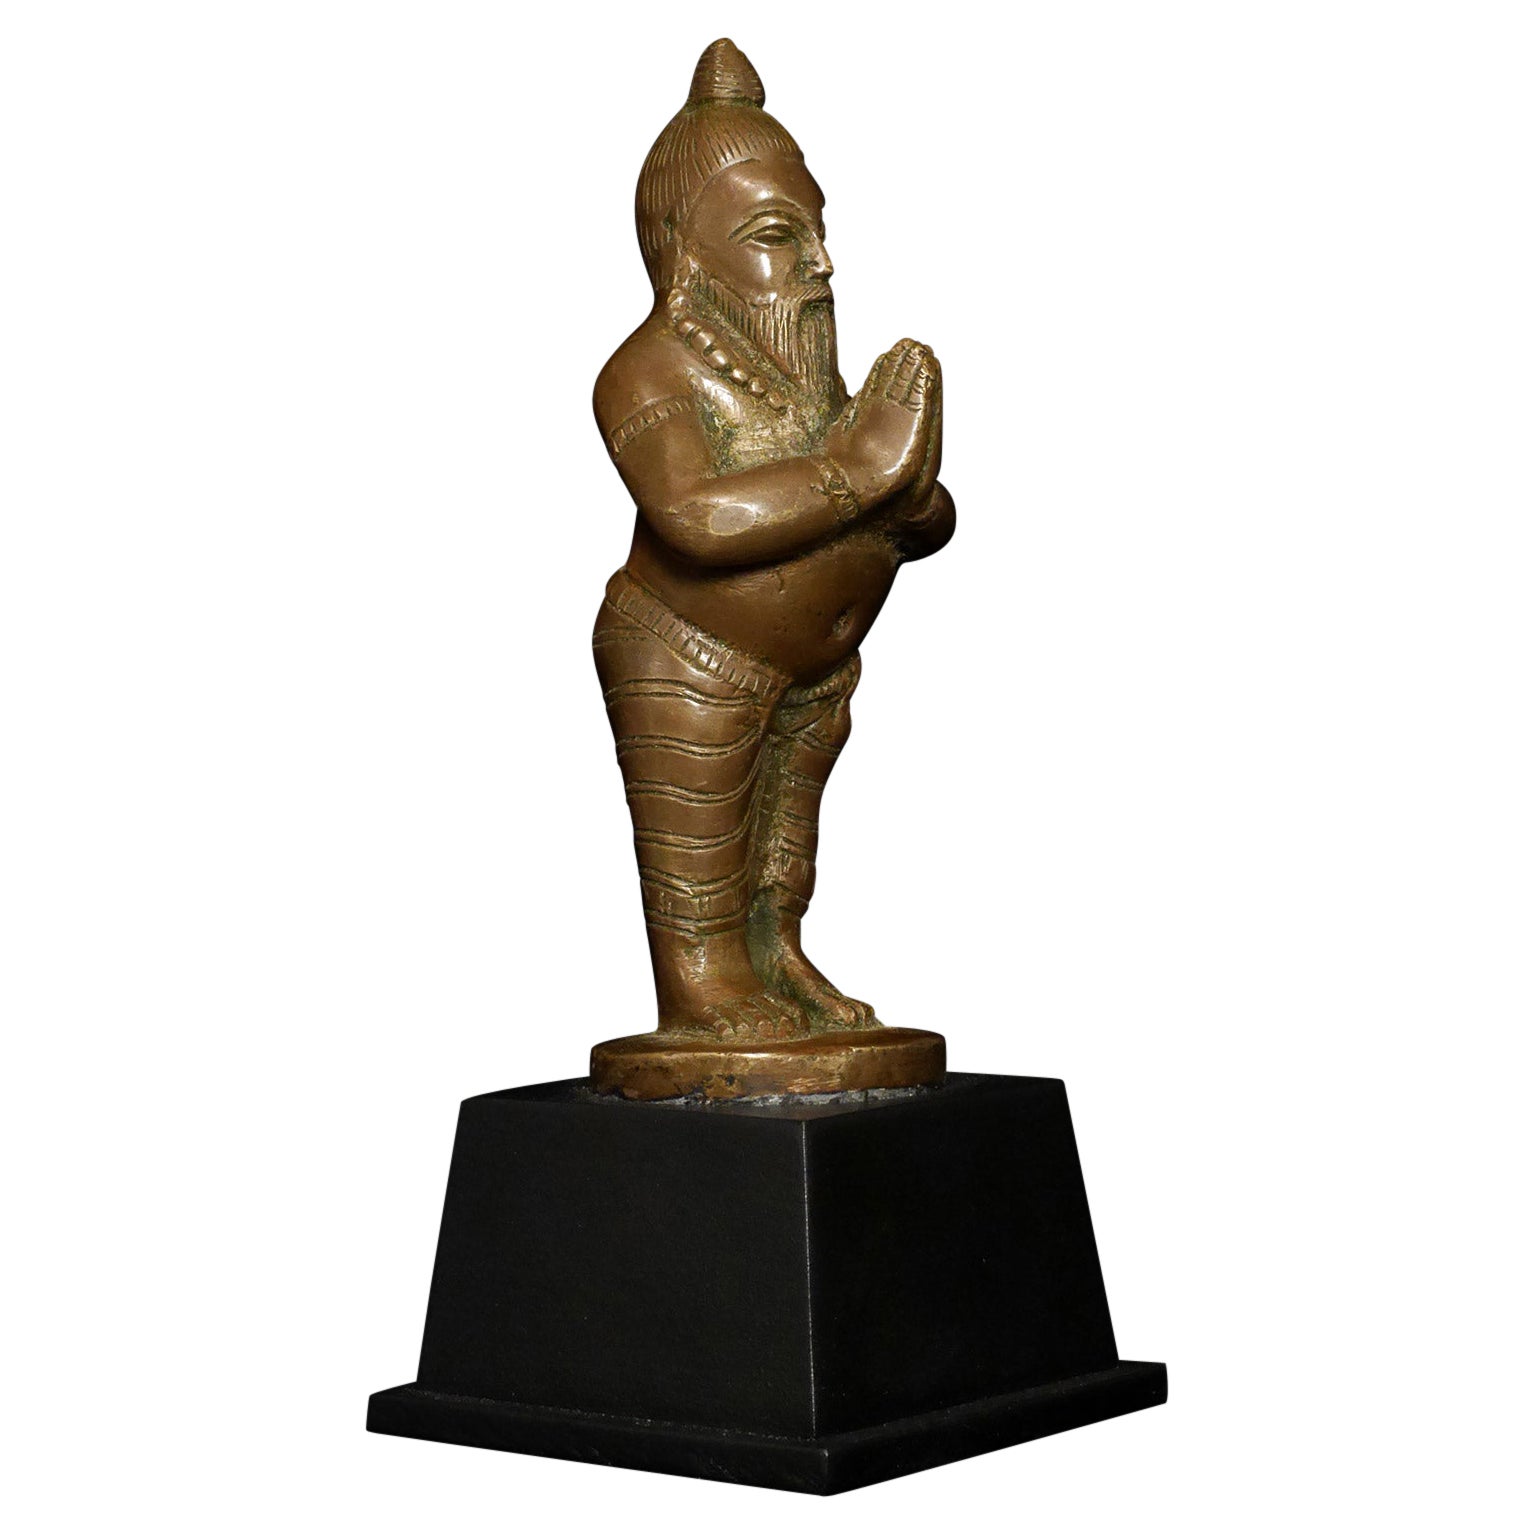 Antique Bronze Indian Yogi, Unique Solid-Cast Hindu Sculpture - 7816 For Sale